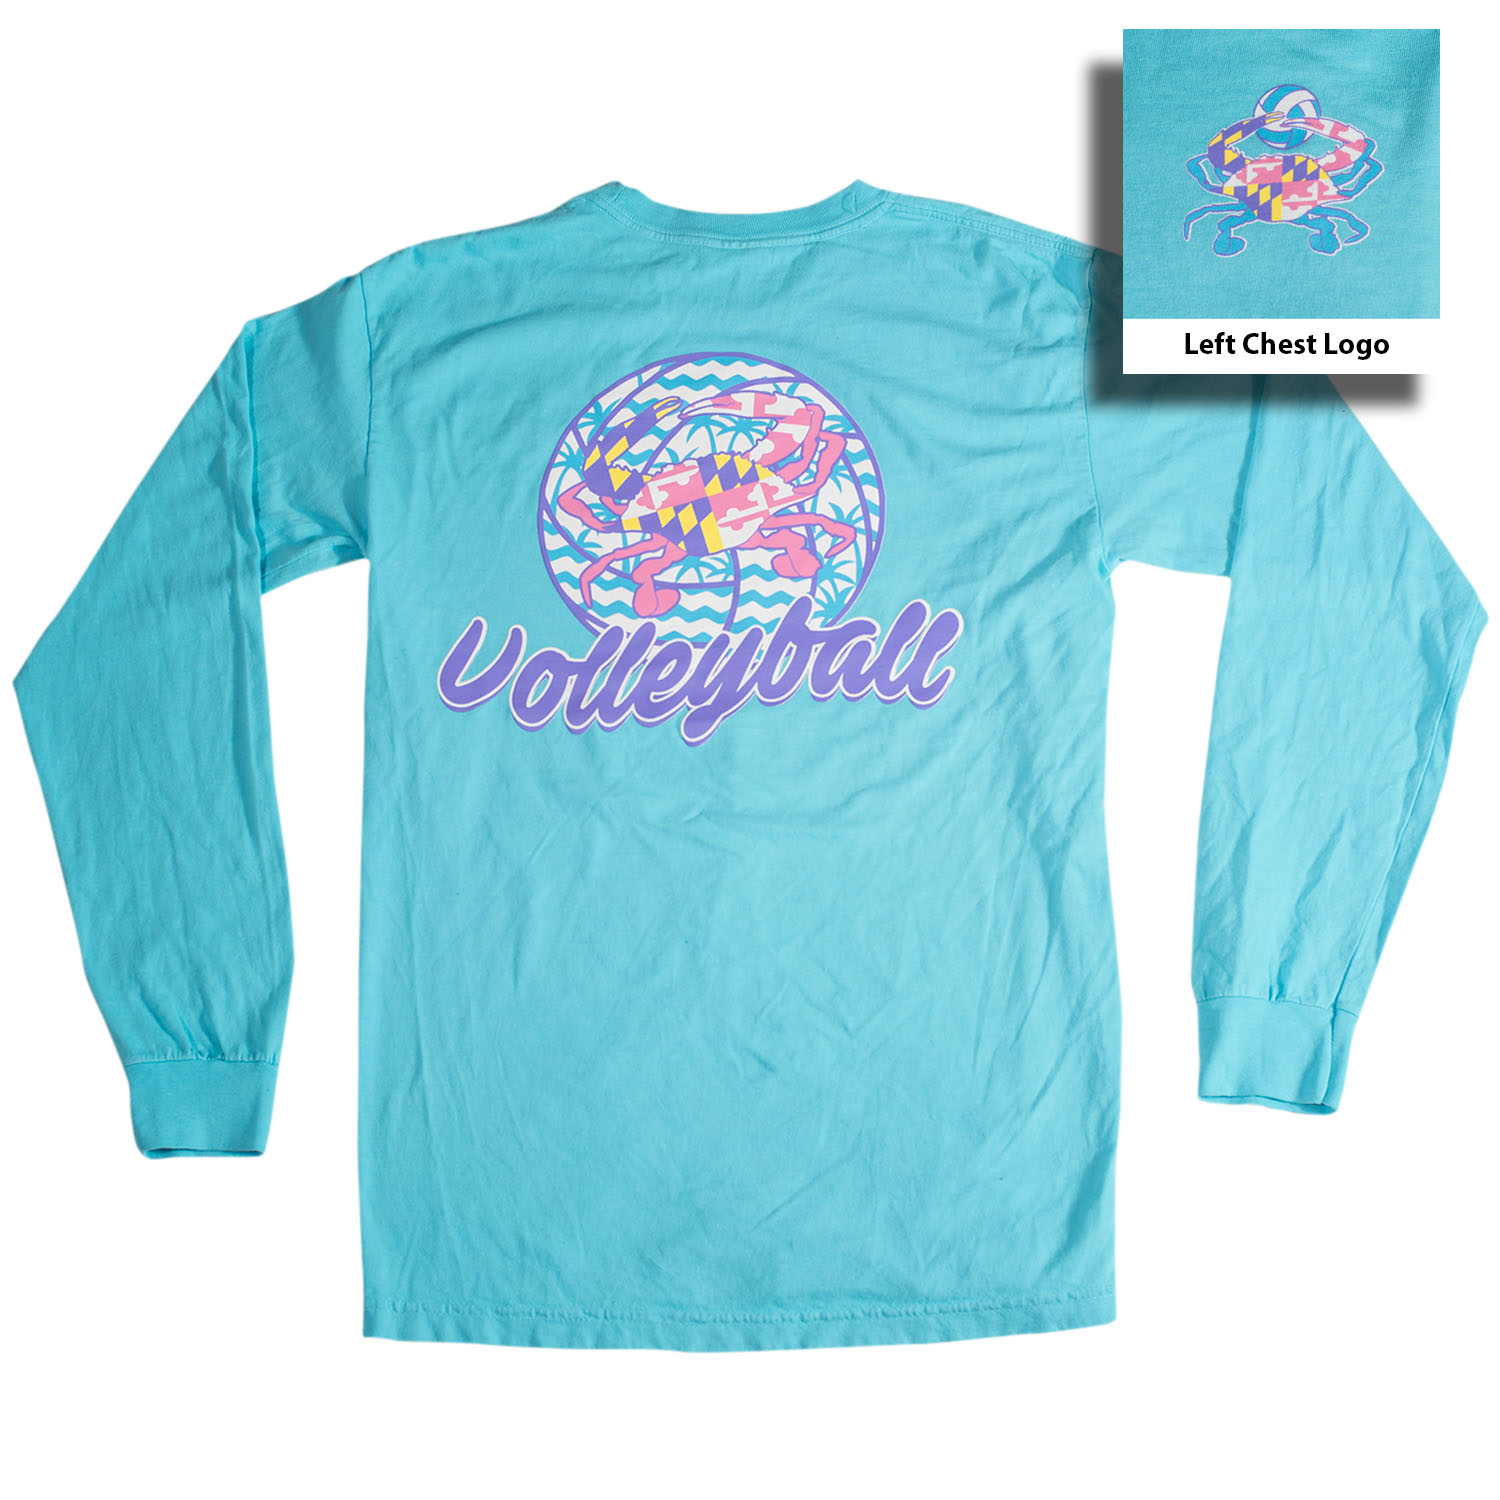 impuls Nauw op gang brengen Teal Volleyball Longsleeve T-Shirt - MOYER Sports